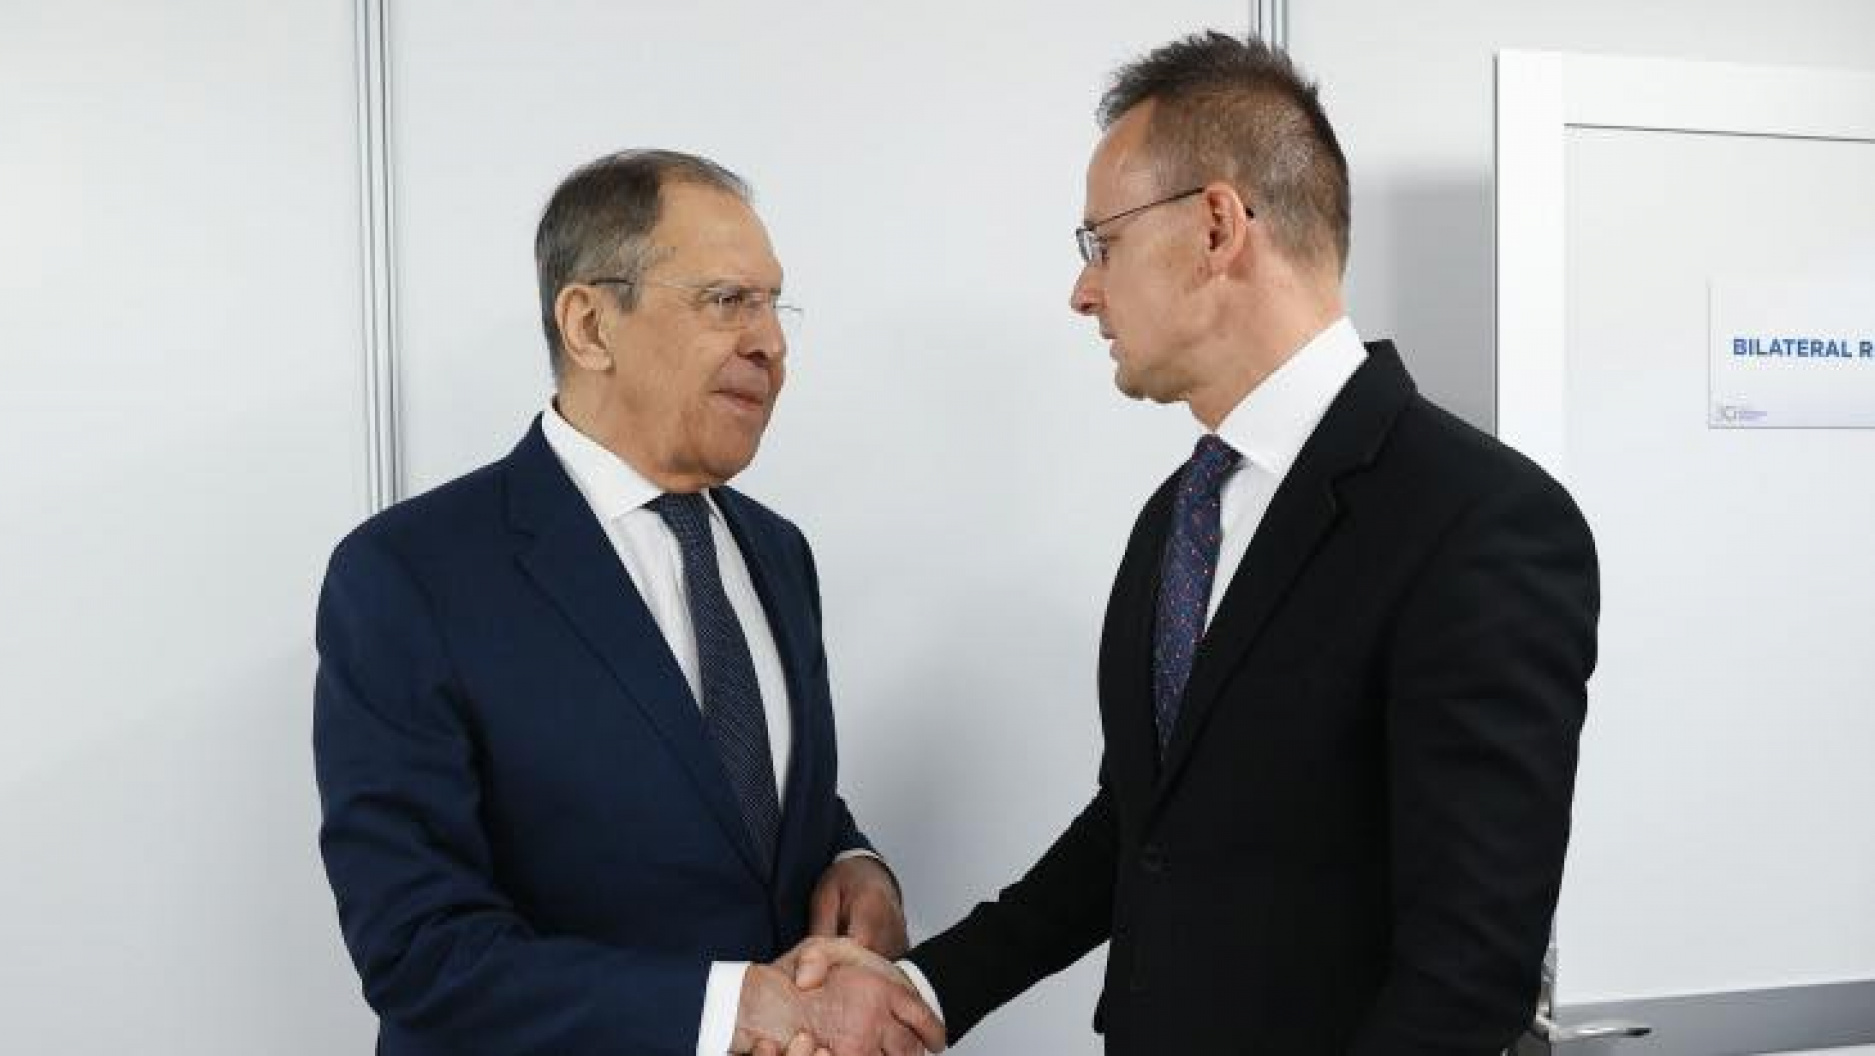 Tusknak sem tetszik, hogy Szijjártó Lavrovval találkozott